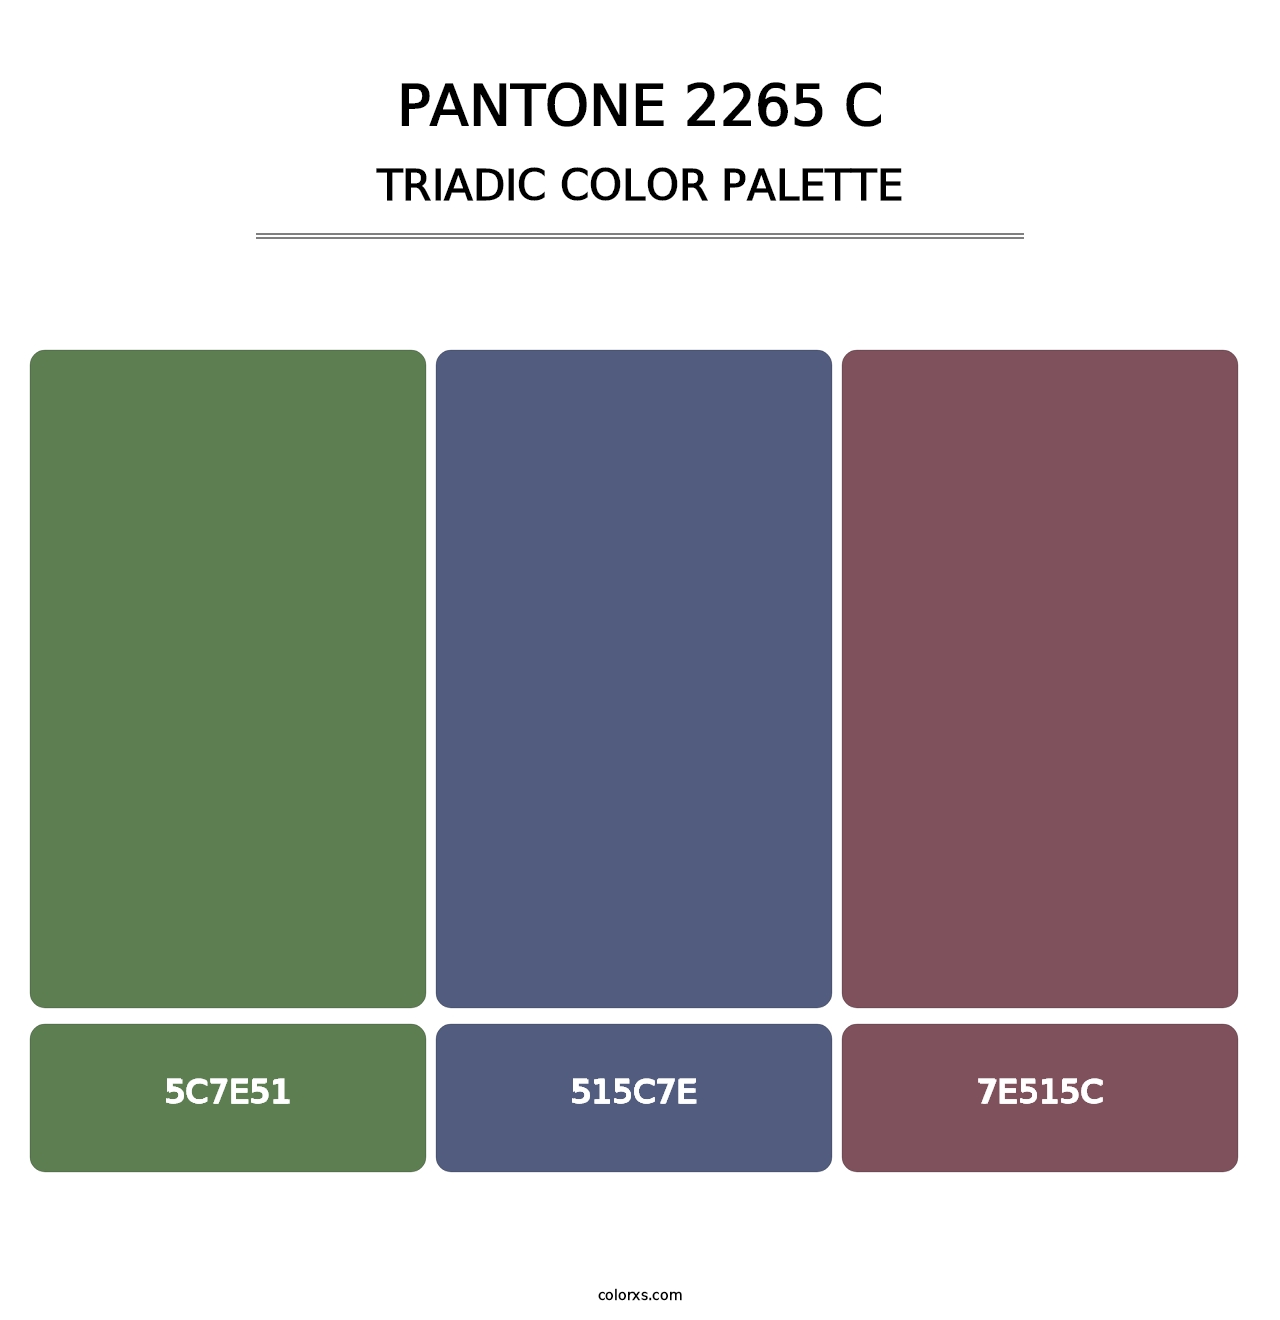 PANTONE 2265 C - Triadic Color Palette